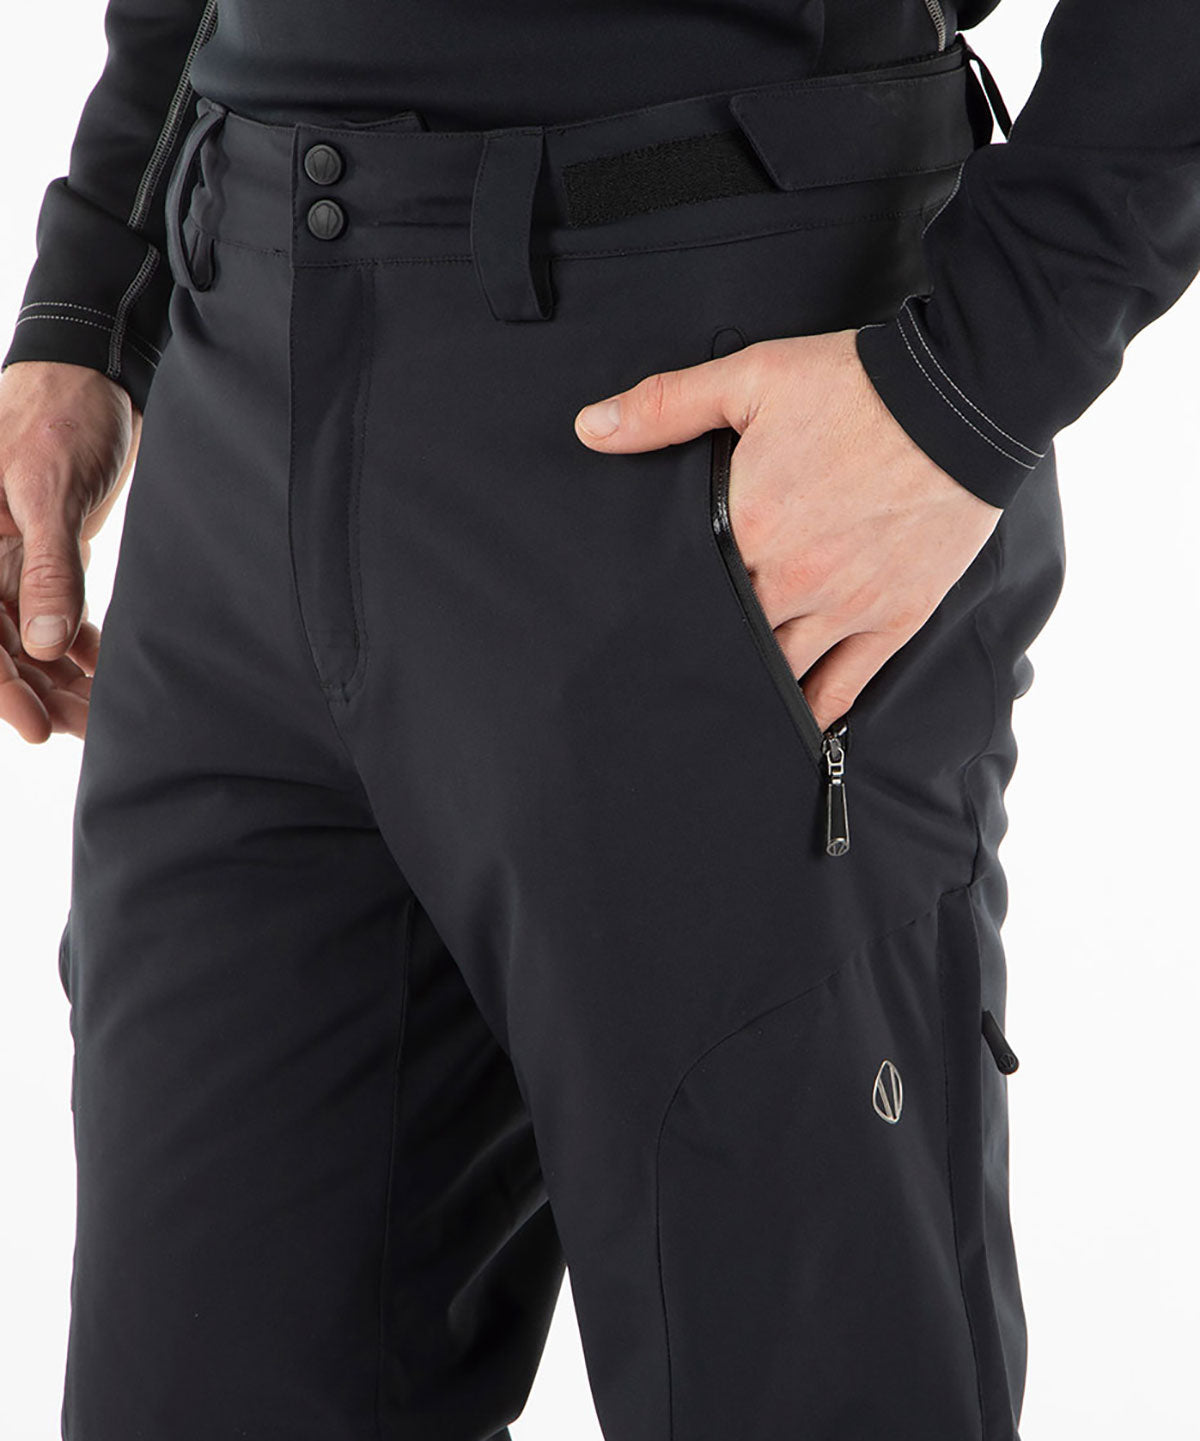 Pantalon extensible isolé imperméable Radius pour hommes - Noir